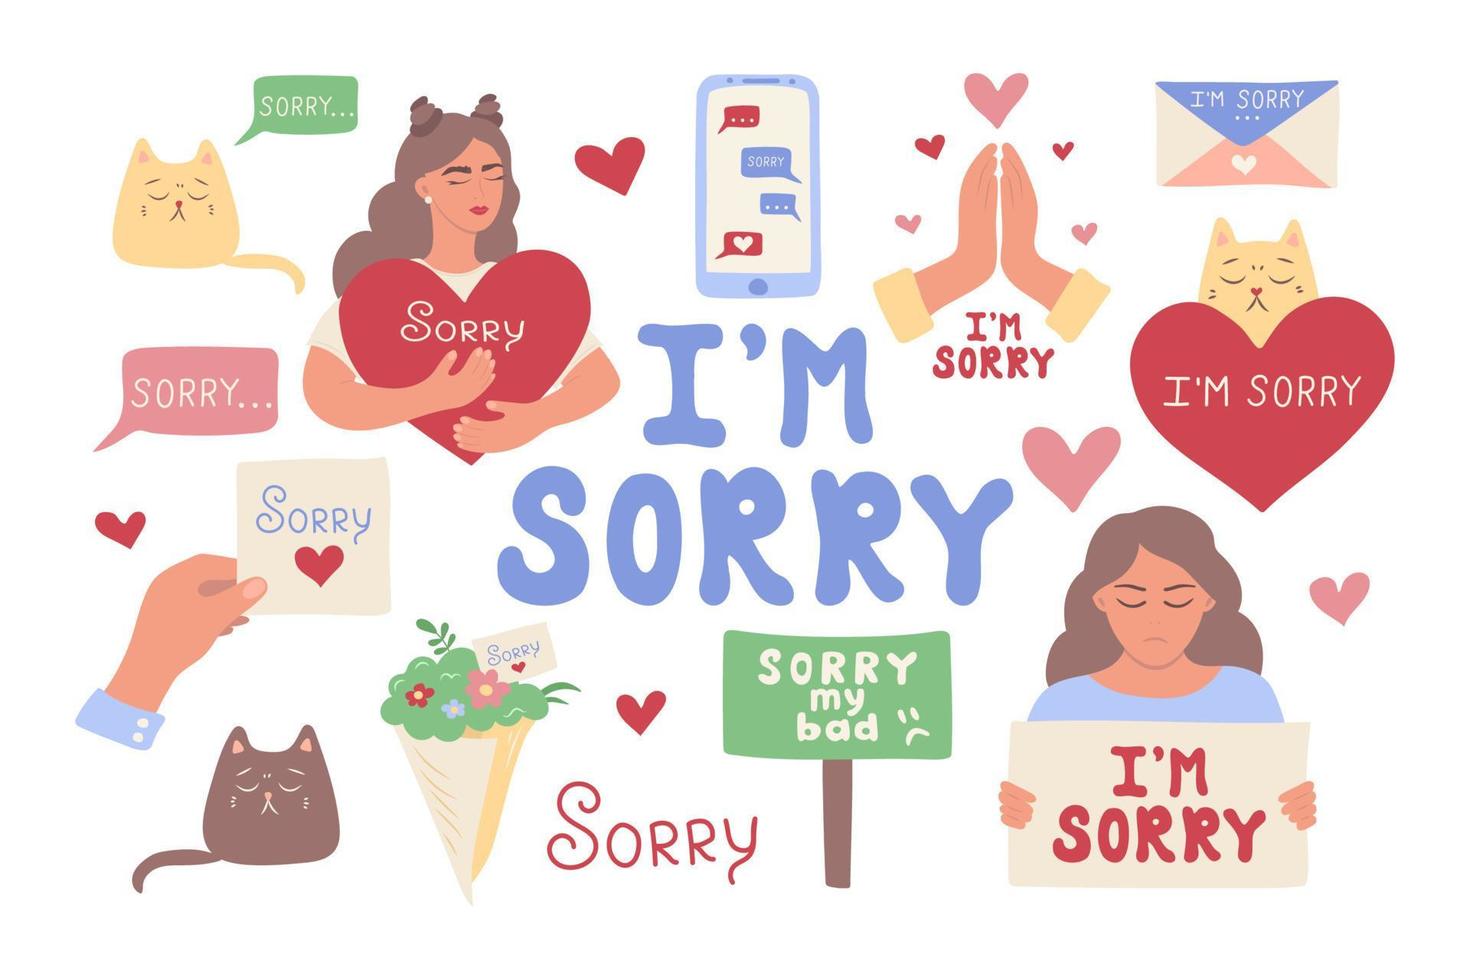 nationaal Sorry dag. een reeks van illustraties van excuses. vector illustratie